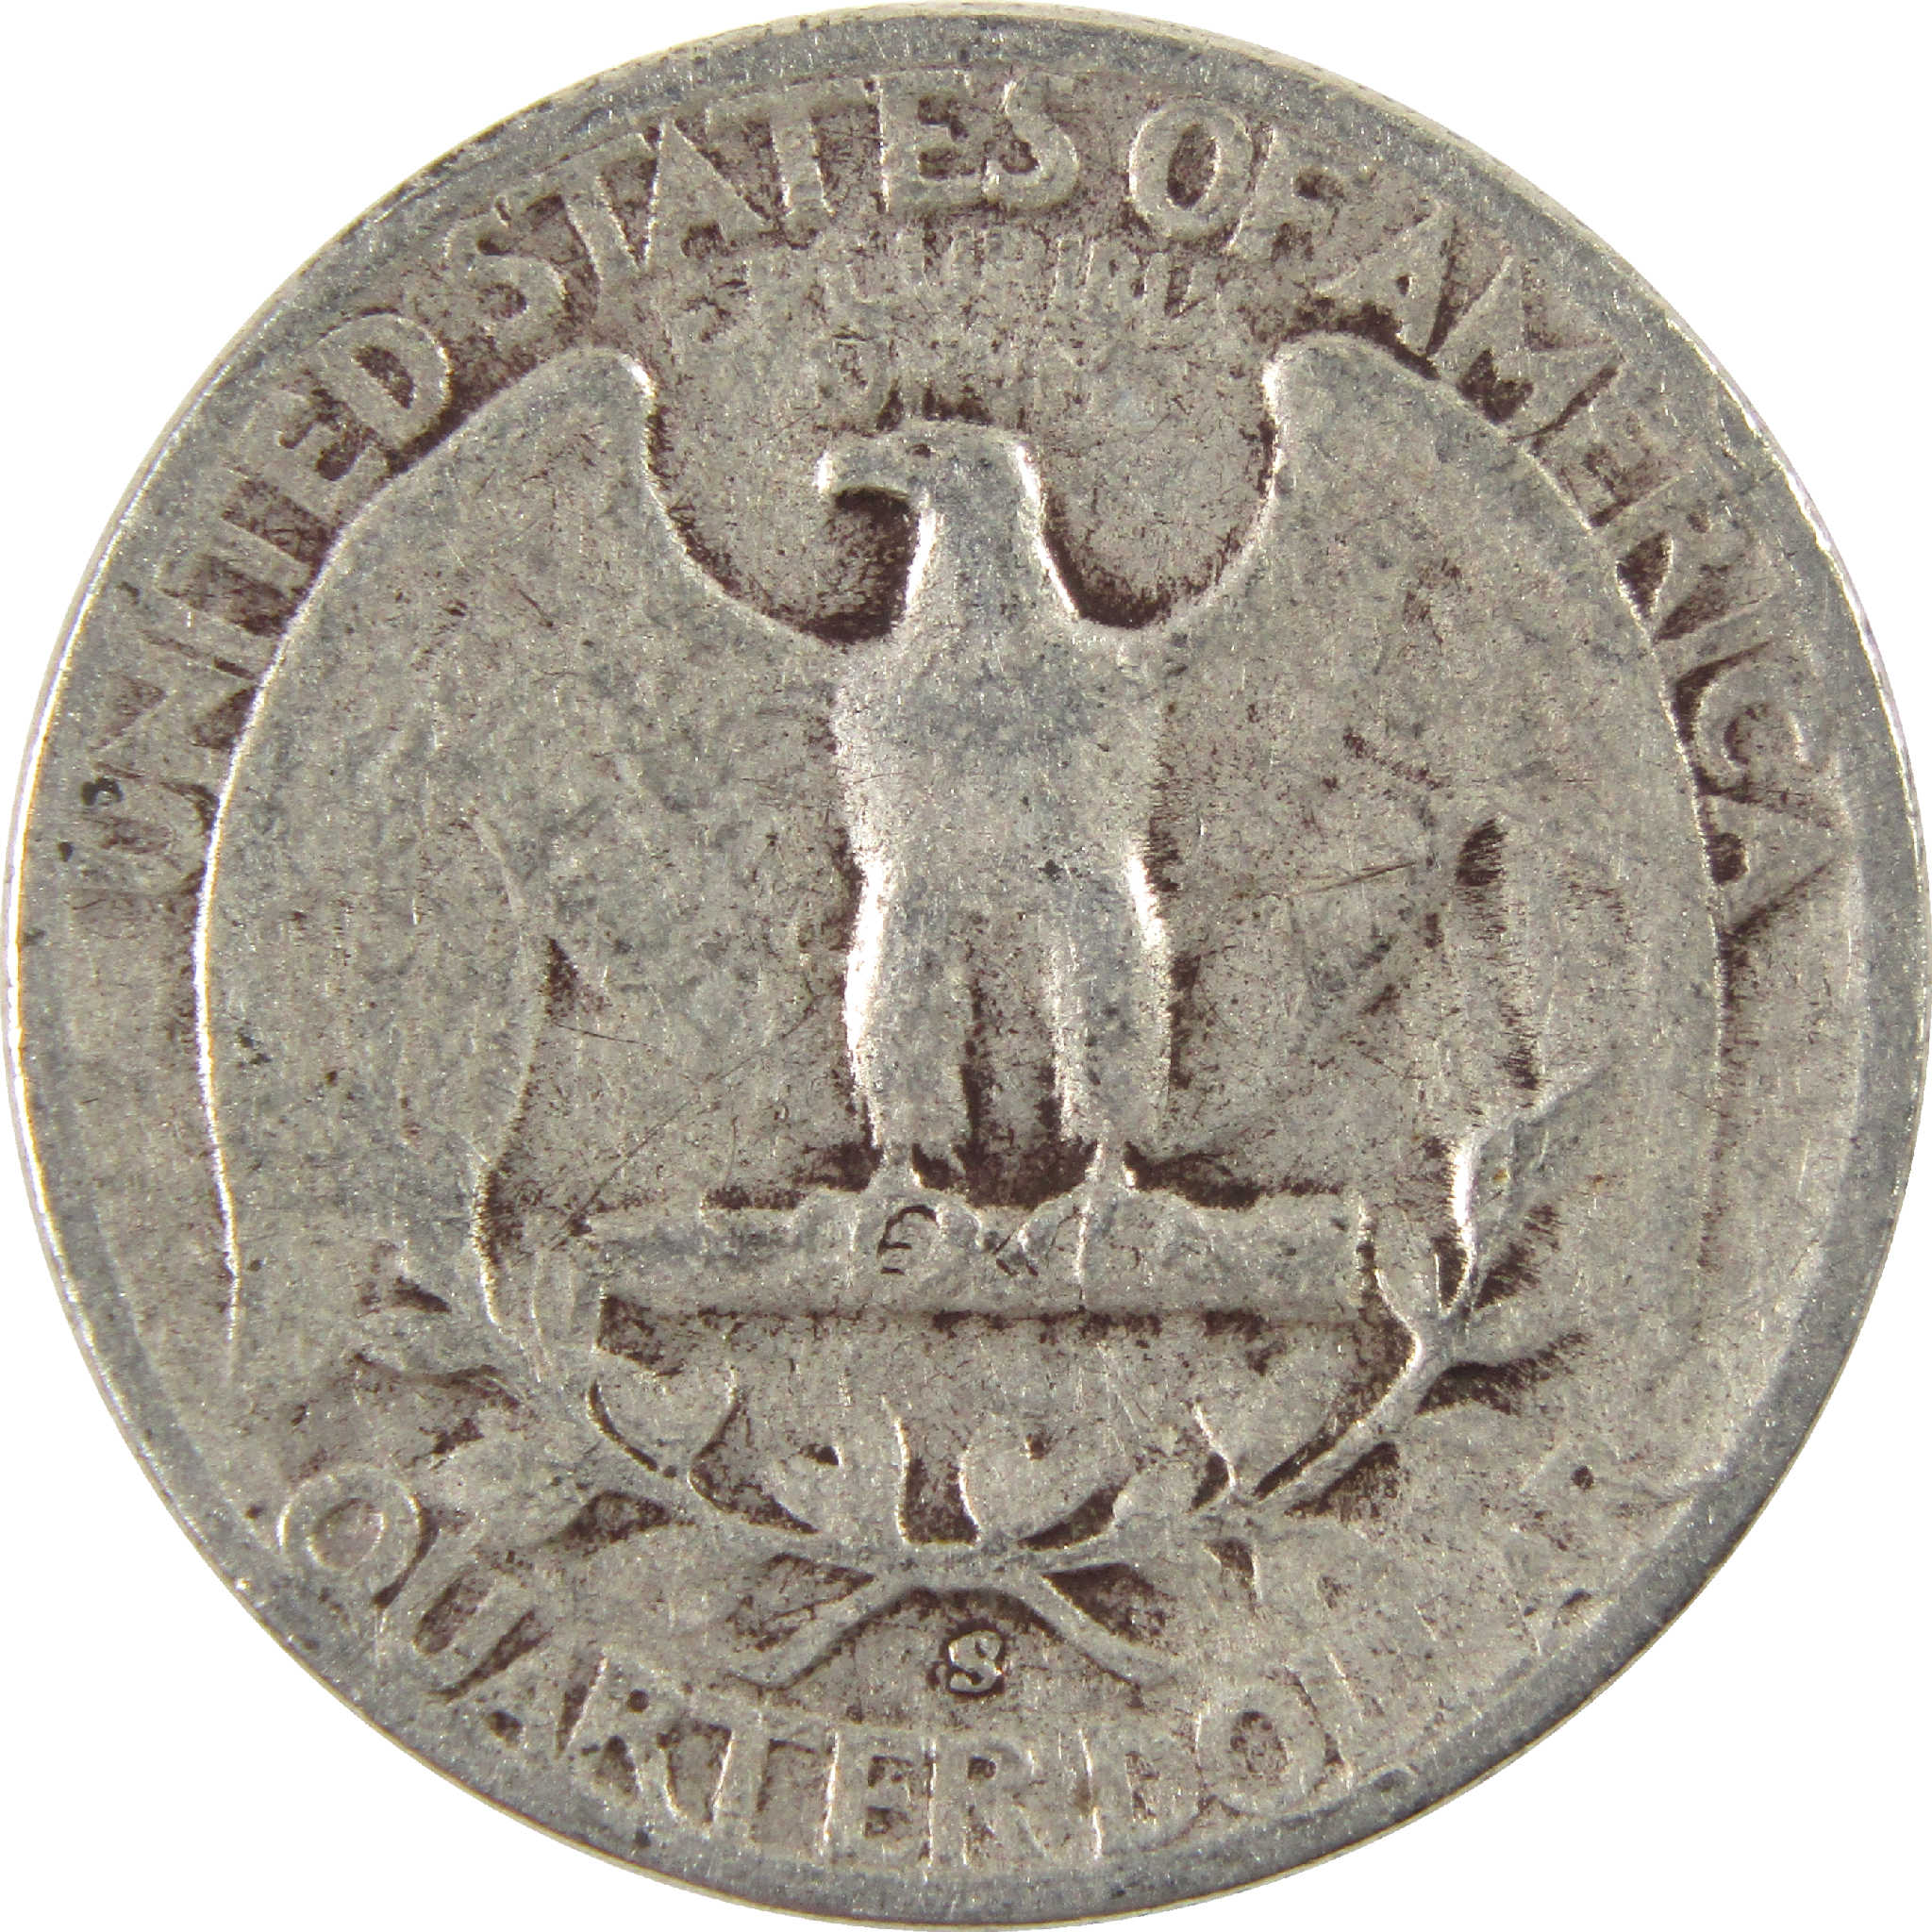 1945 S Washington Quarter VG Very Good Silver 25c Coin